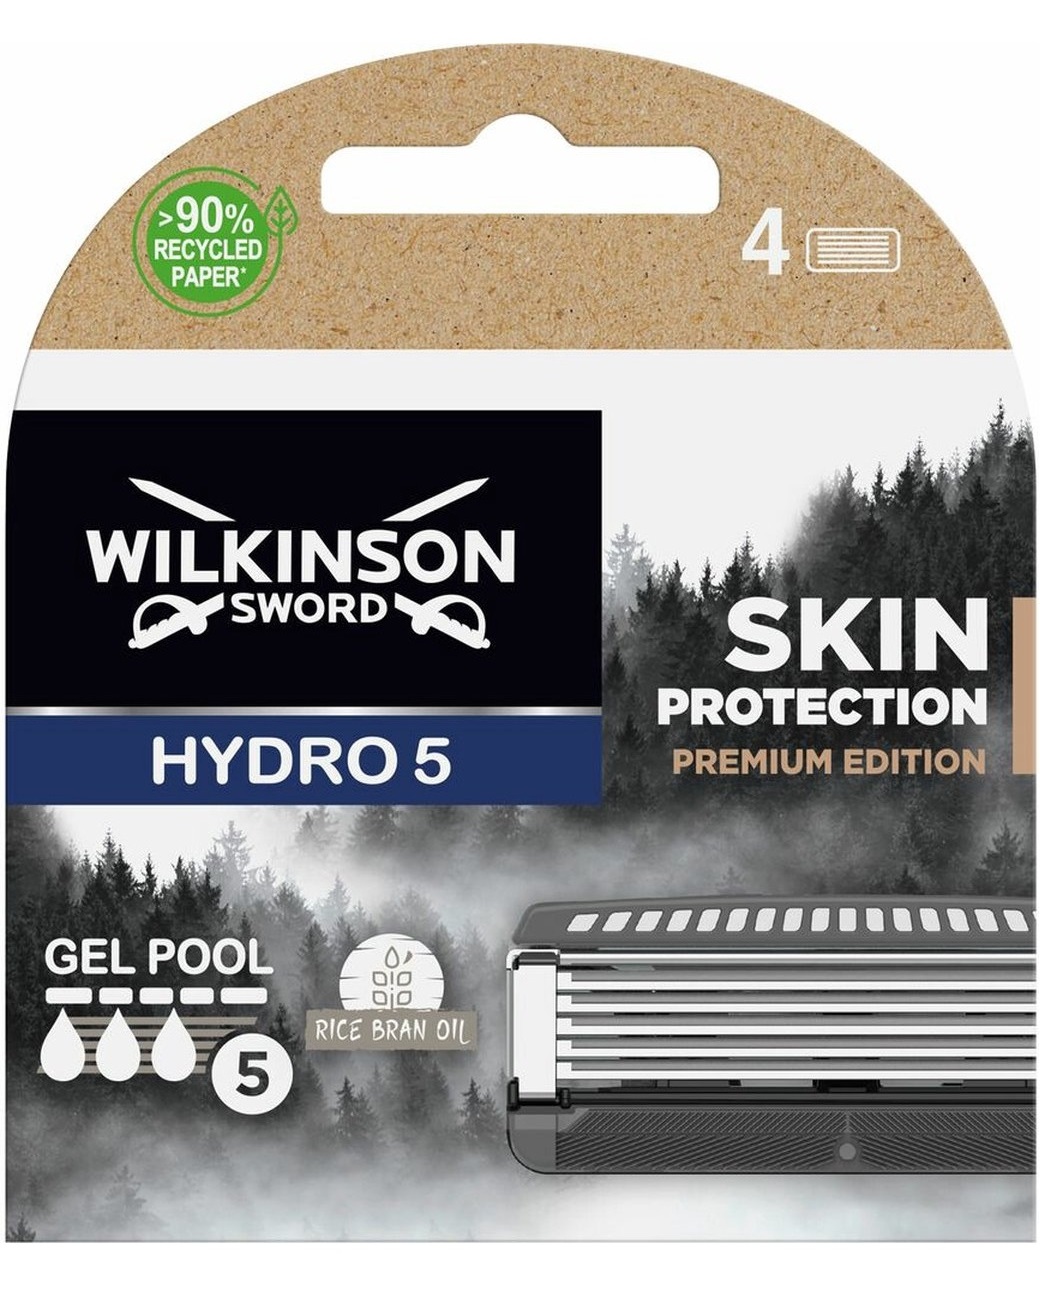 Сменные кассеты для бритв SENSE Wilkinson Sword Hydro 5 Skin Premiun Edition, 4 шт сменные лезвия vintage для станка quattro 4 шт wilkinson sword schick quattro vintage